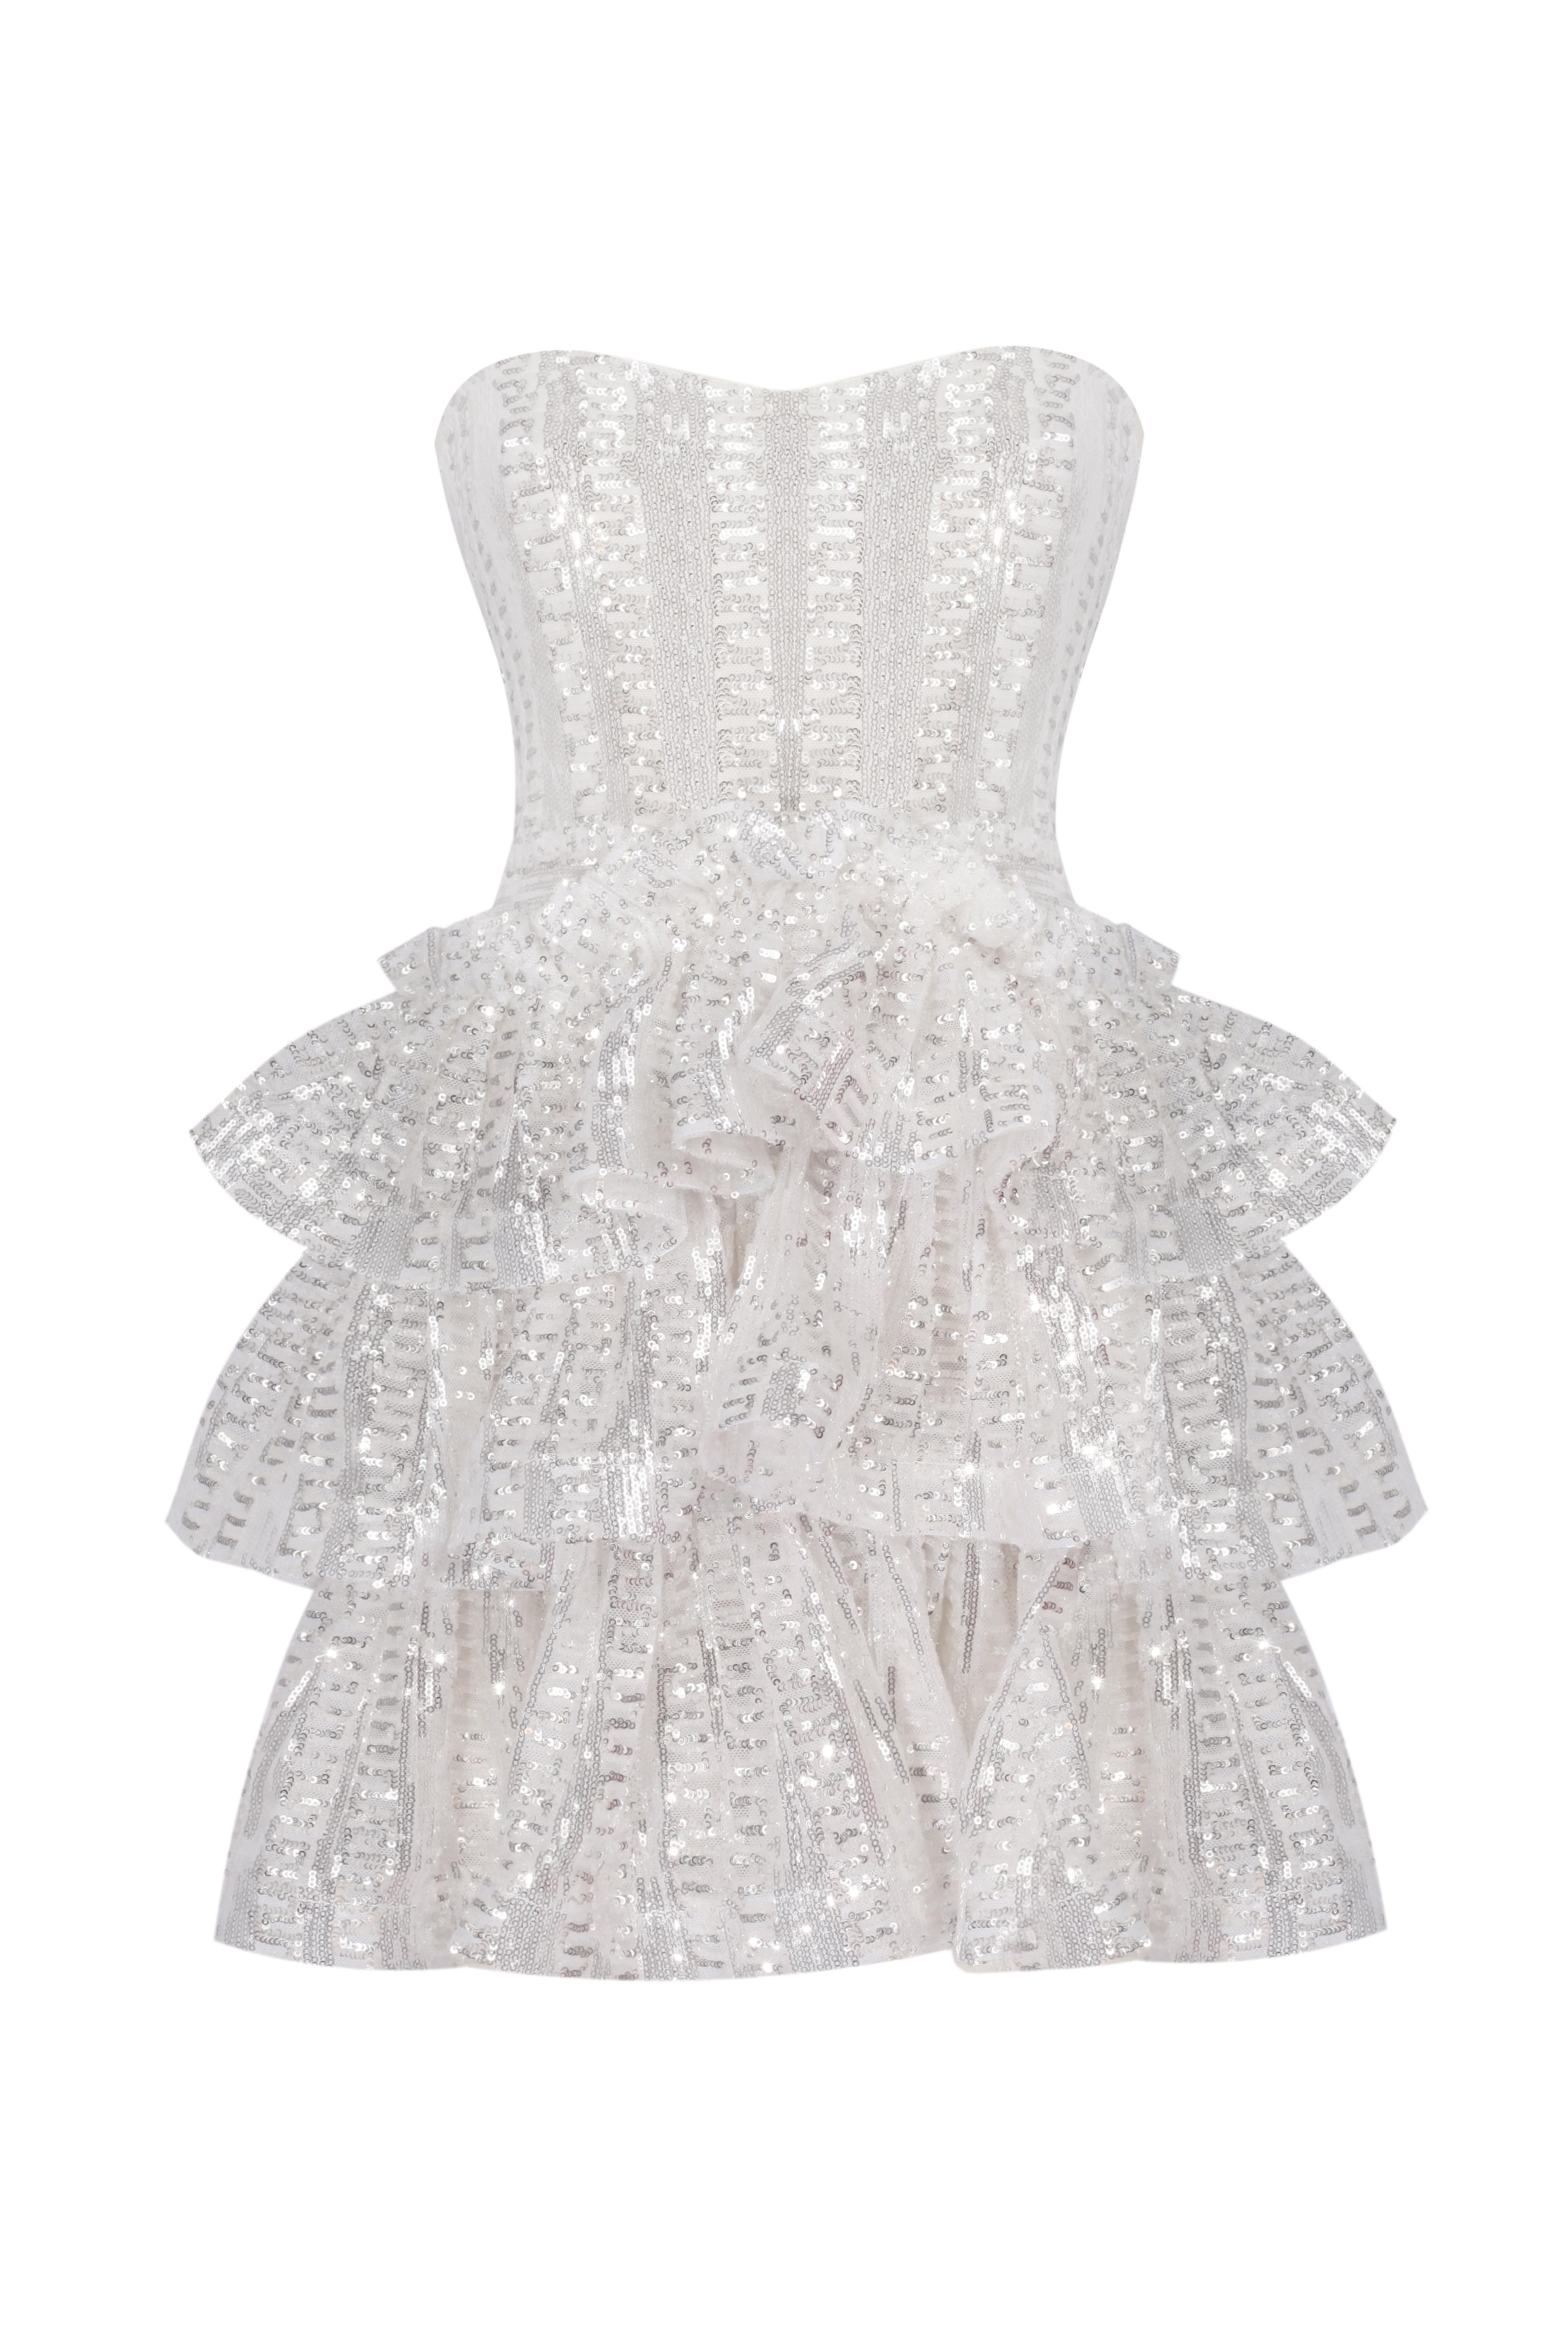 Lola White Mini Dress